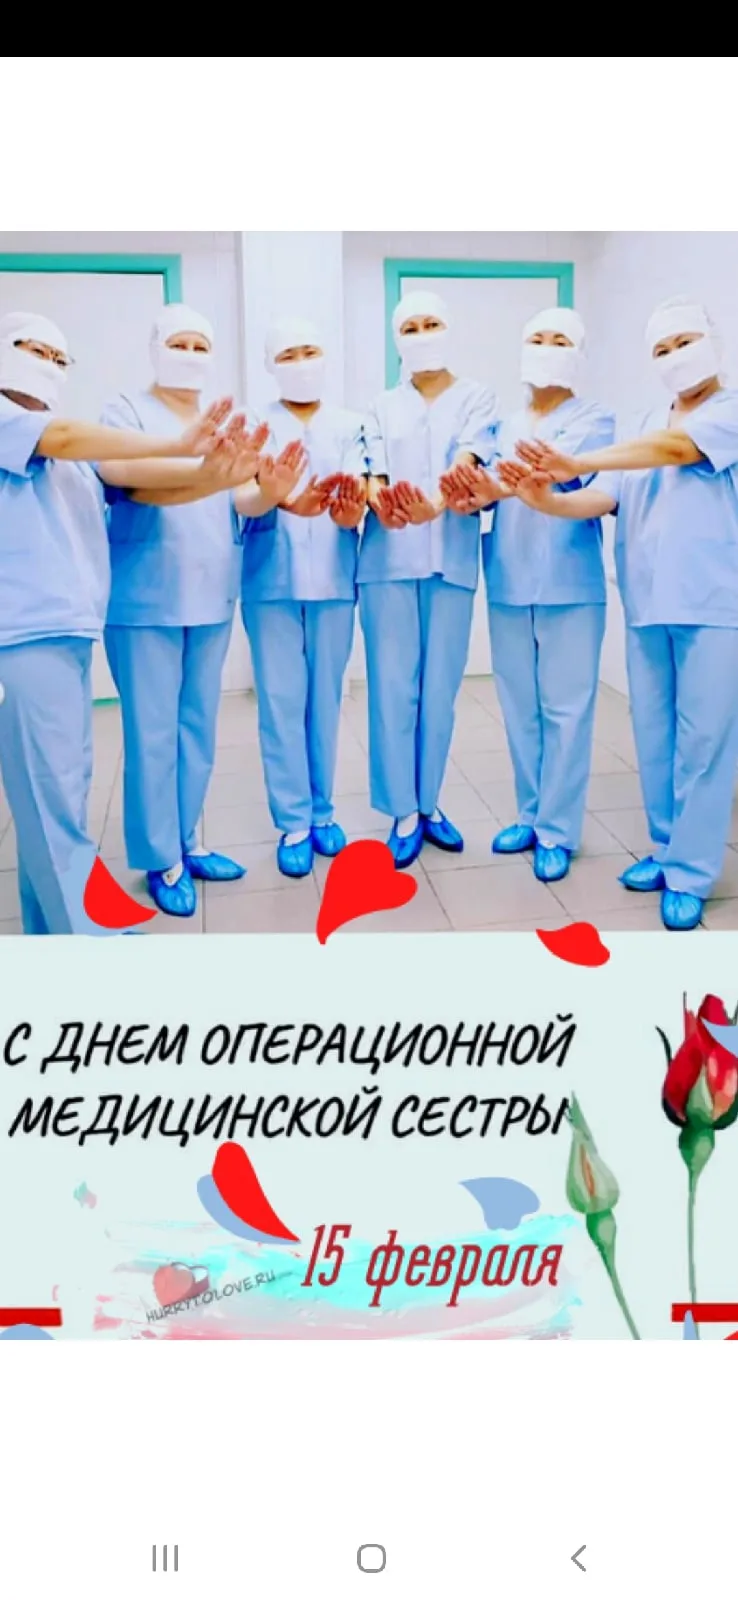 15 февраля день медсестры. День операционной медицинской сестры. 15 Февраля день операционной медсестры. Международный день операционной сестры. С днем операционной медсестры.